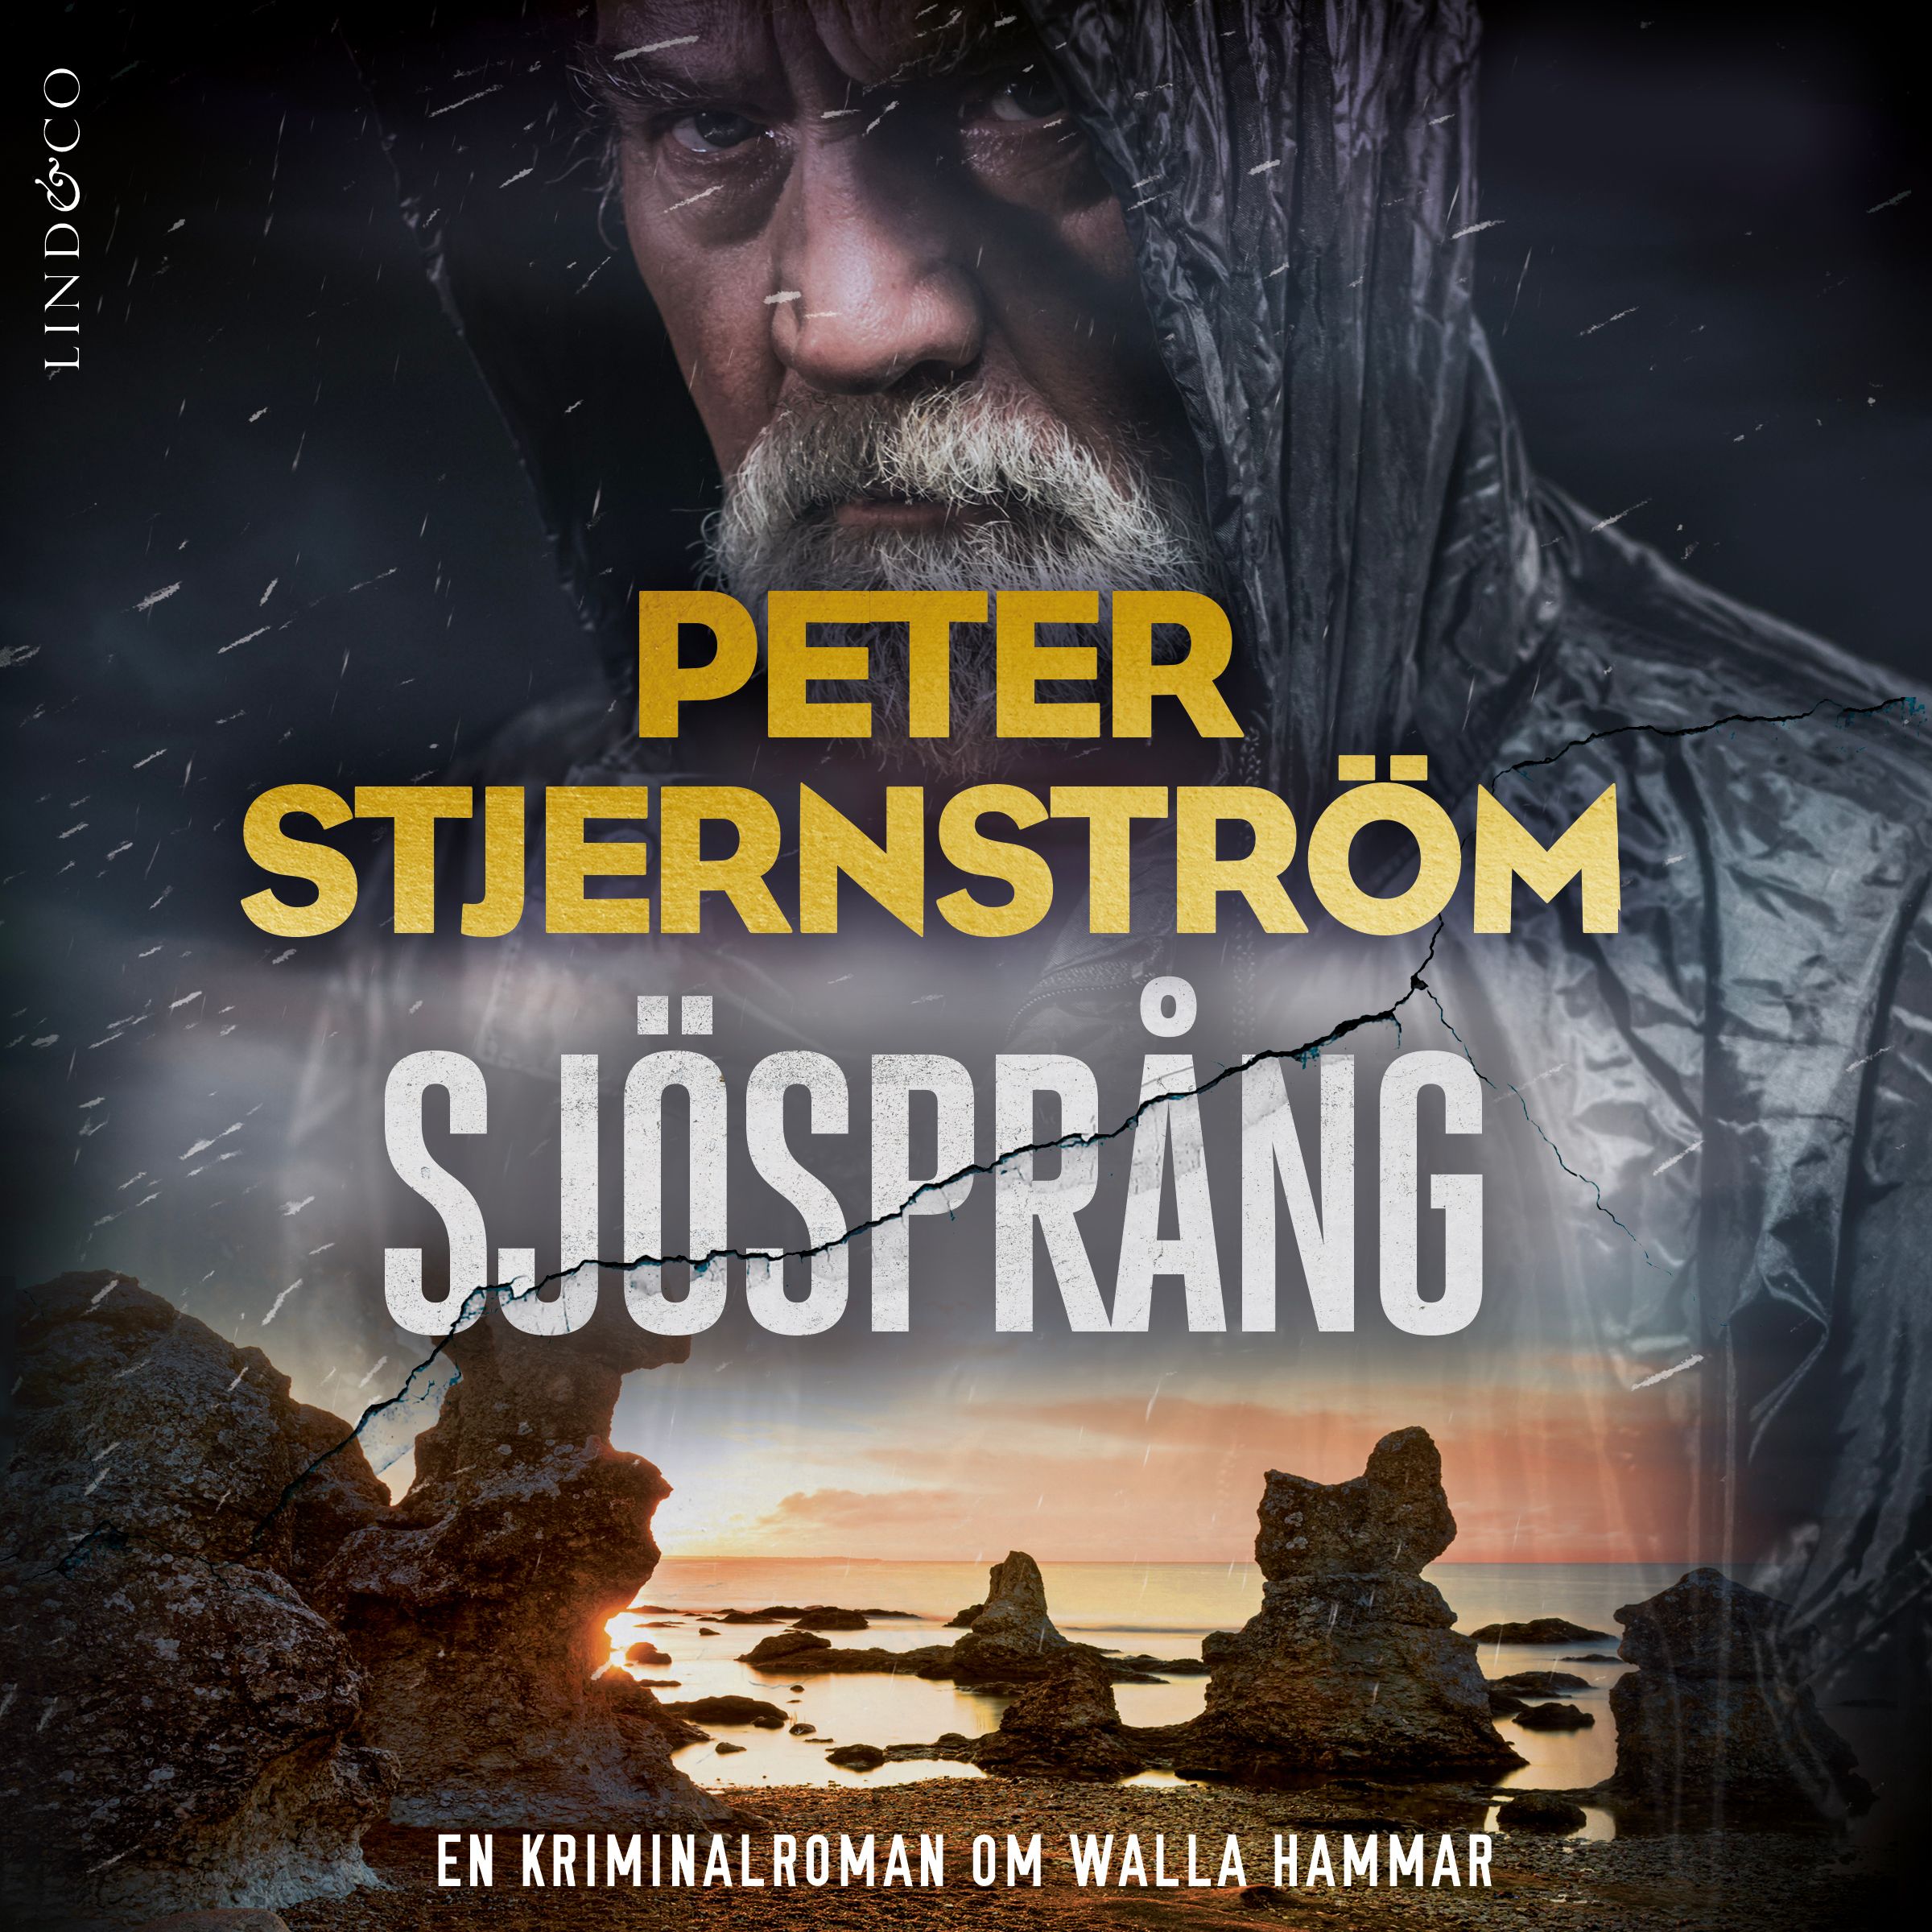 Sjösprång, ljudbok av Peter Stjernström